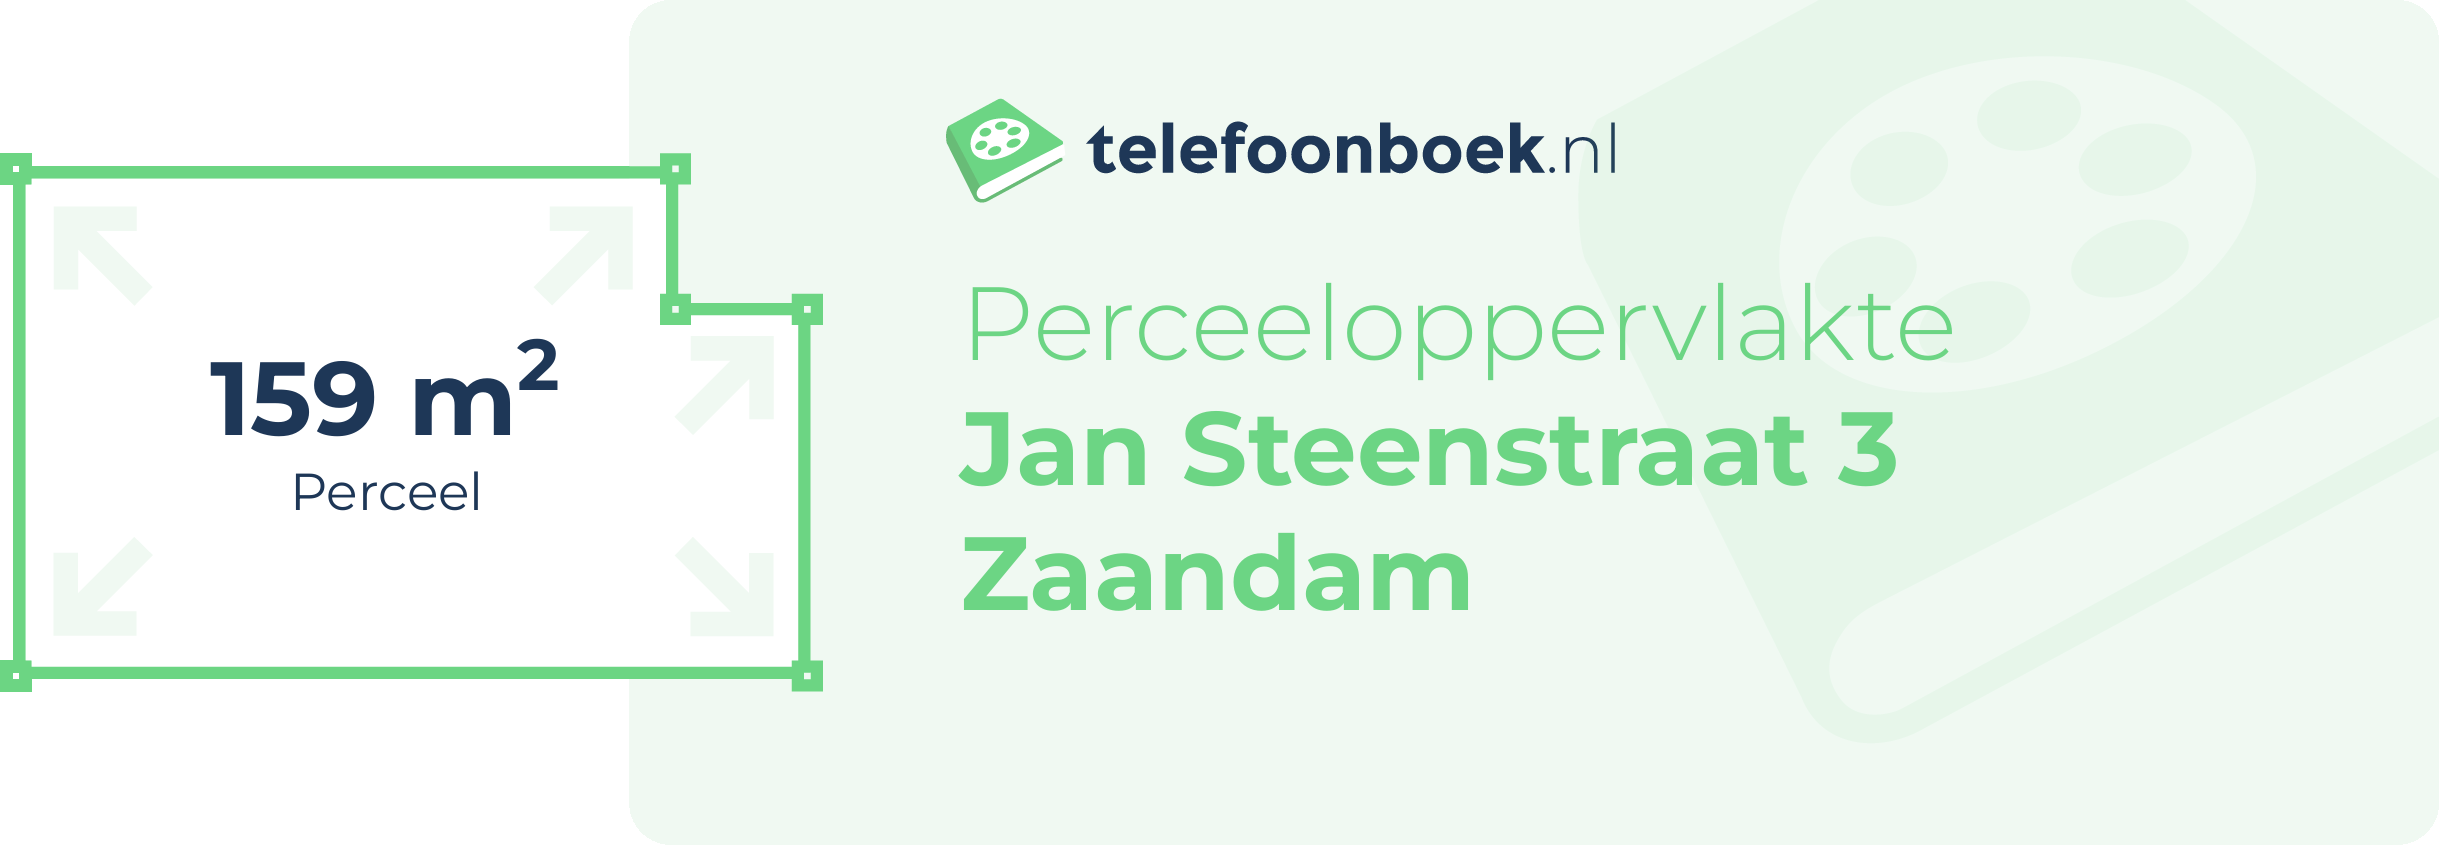 Perceeloppervlakte Jan Steenstraat 3 Zaandam